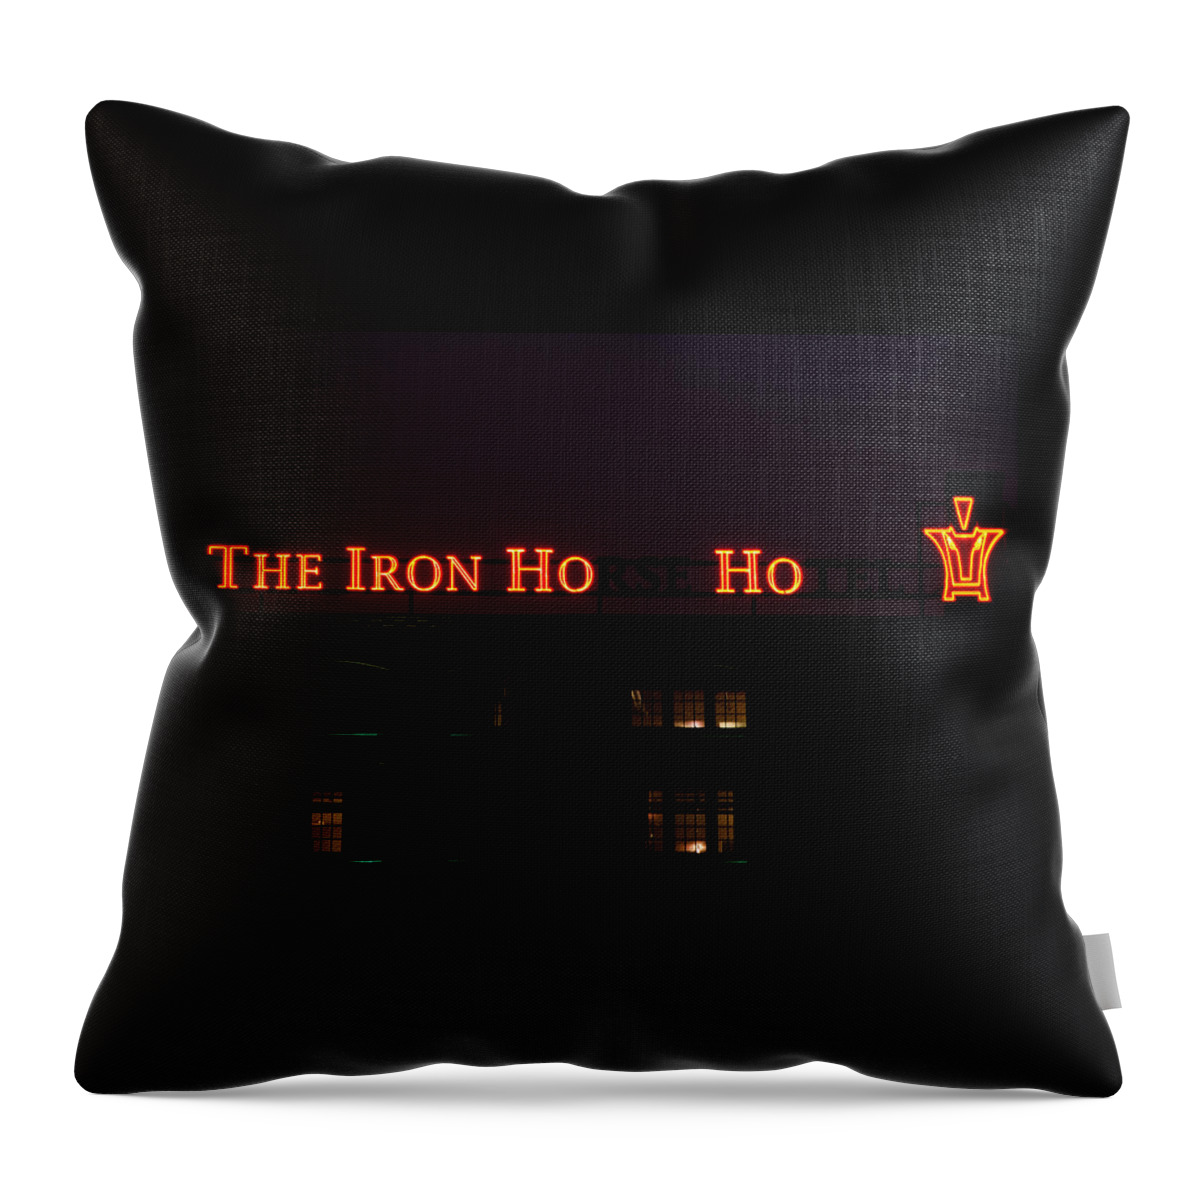 Iron Ho-ho Throw Pillow featuring the photograph Iron Ho-Ho by Susan McMenamin